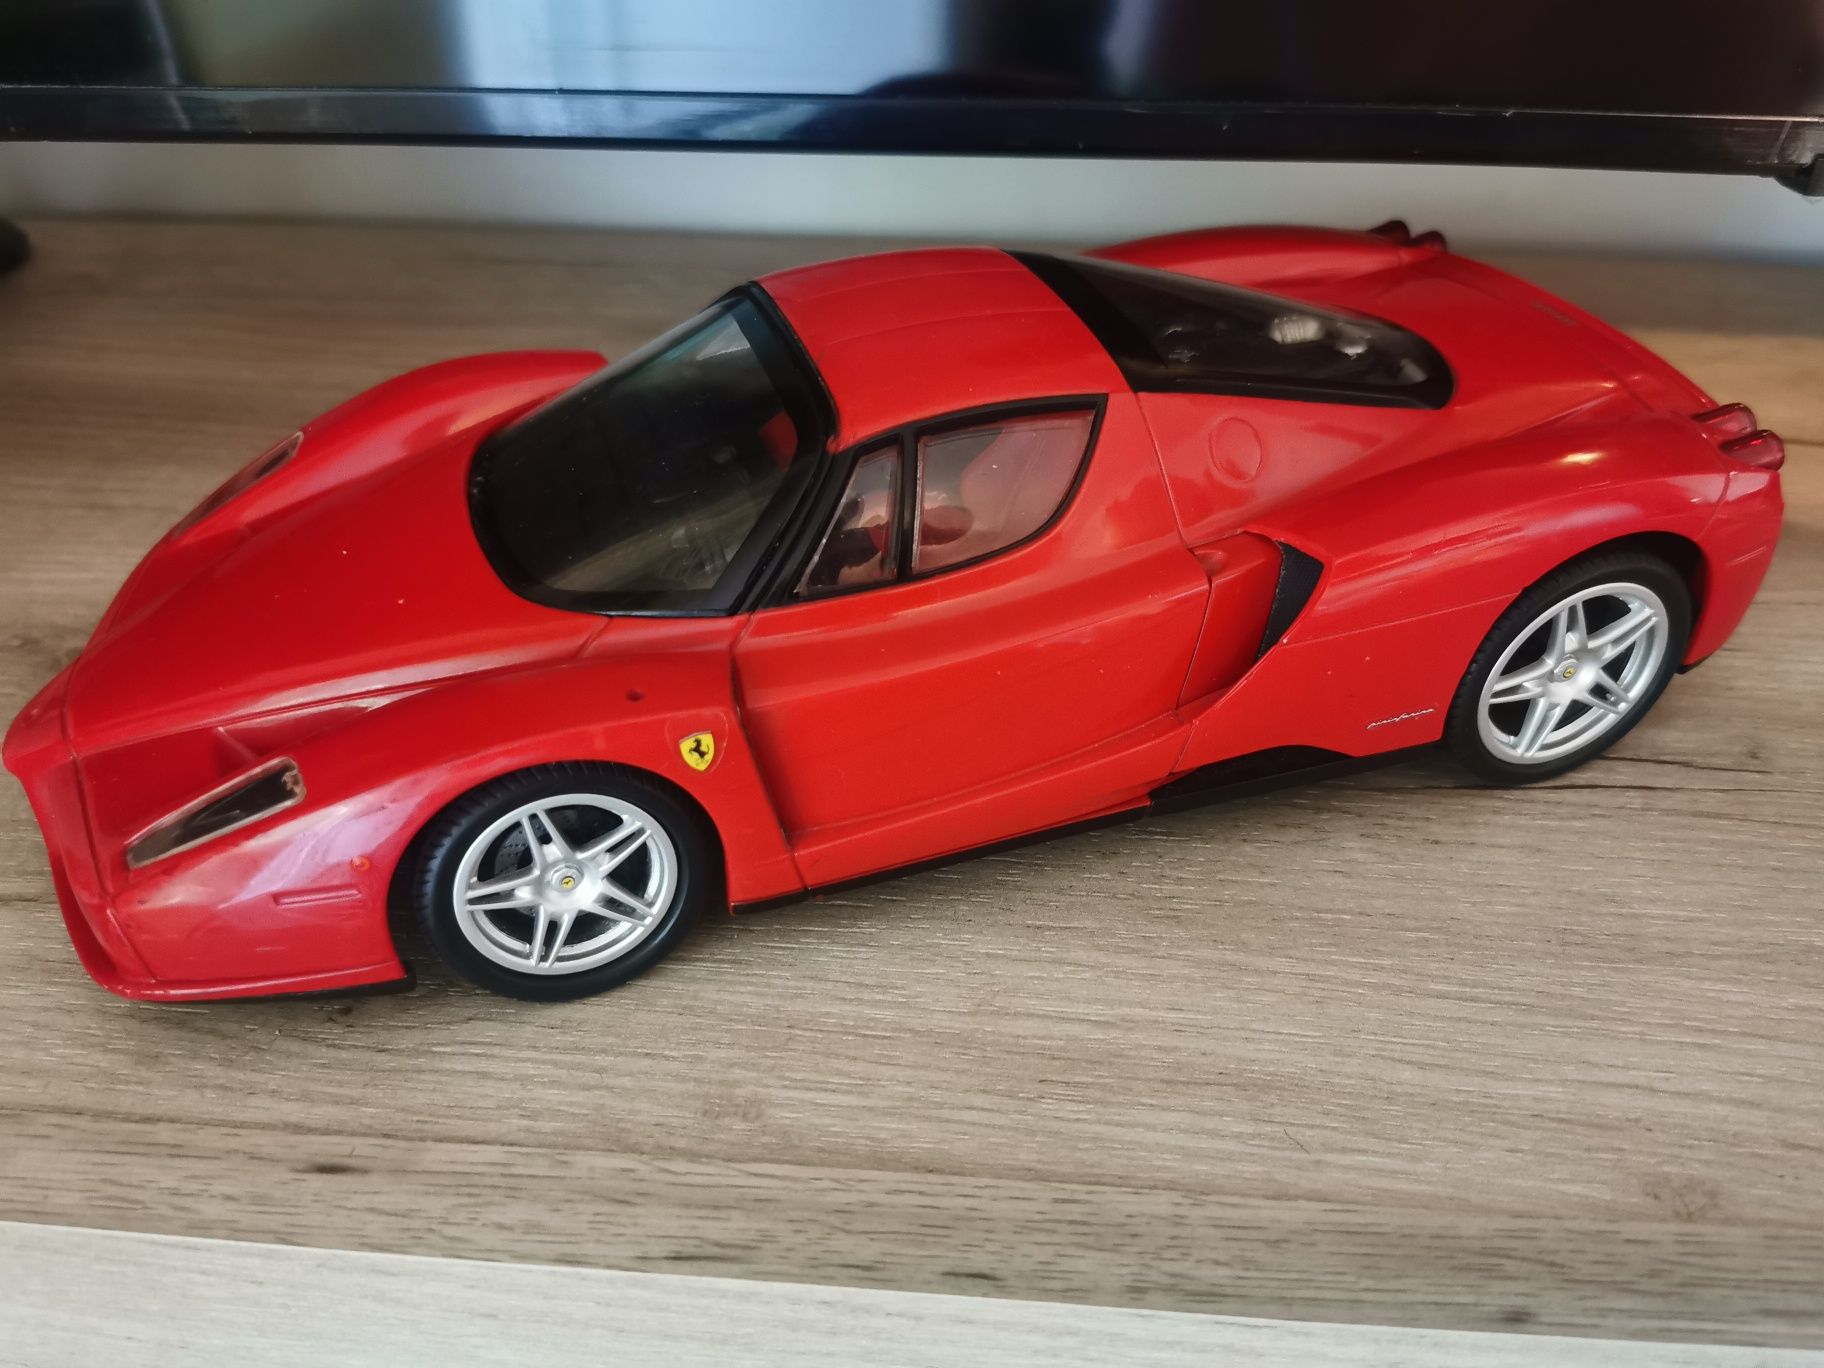 Masina / Macheta Ferrari deosebita